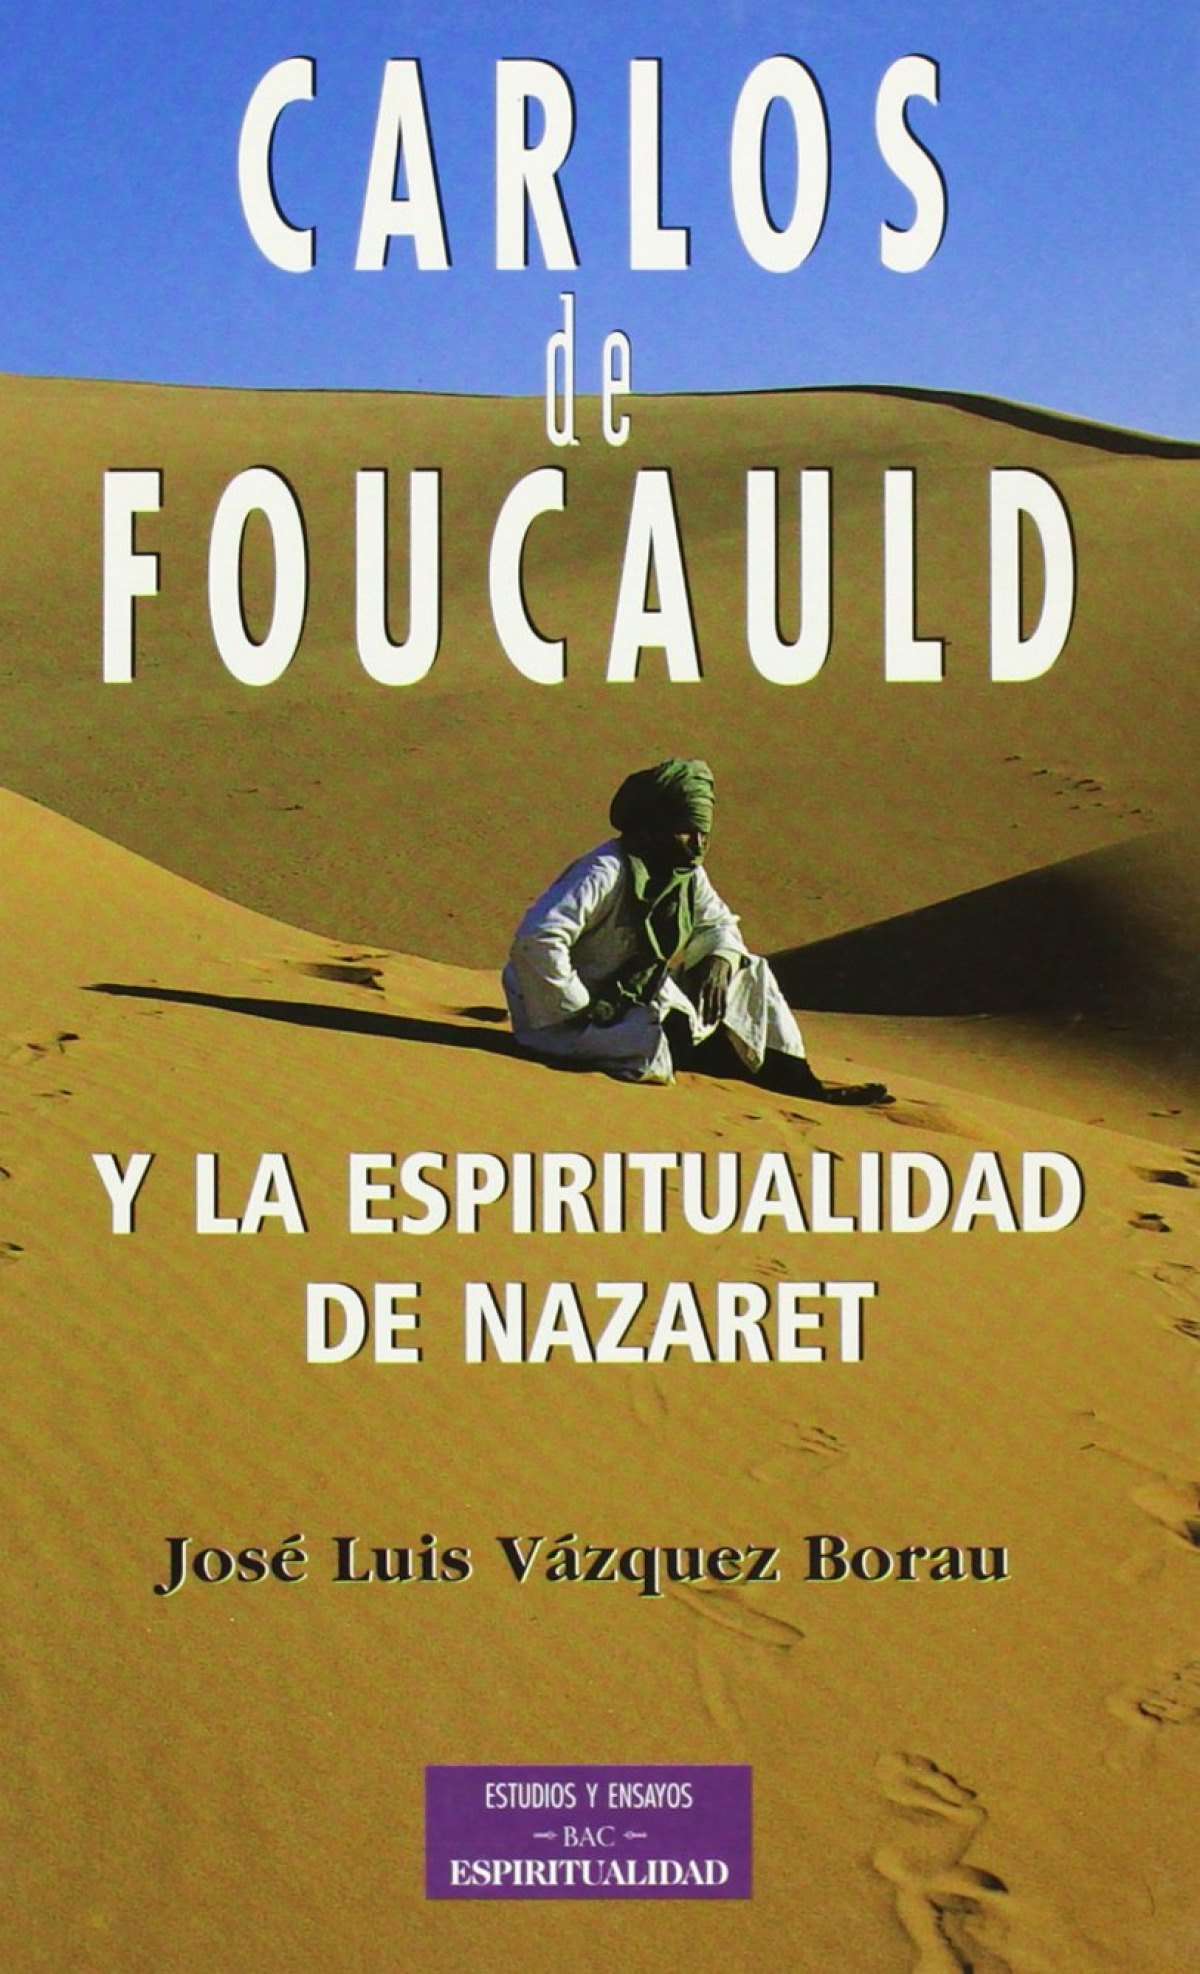 Carlos foucauld y la espiritualidad de nazaret - Vazquez Borau, José Luis